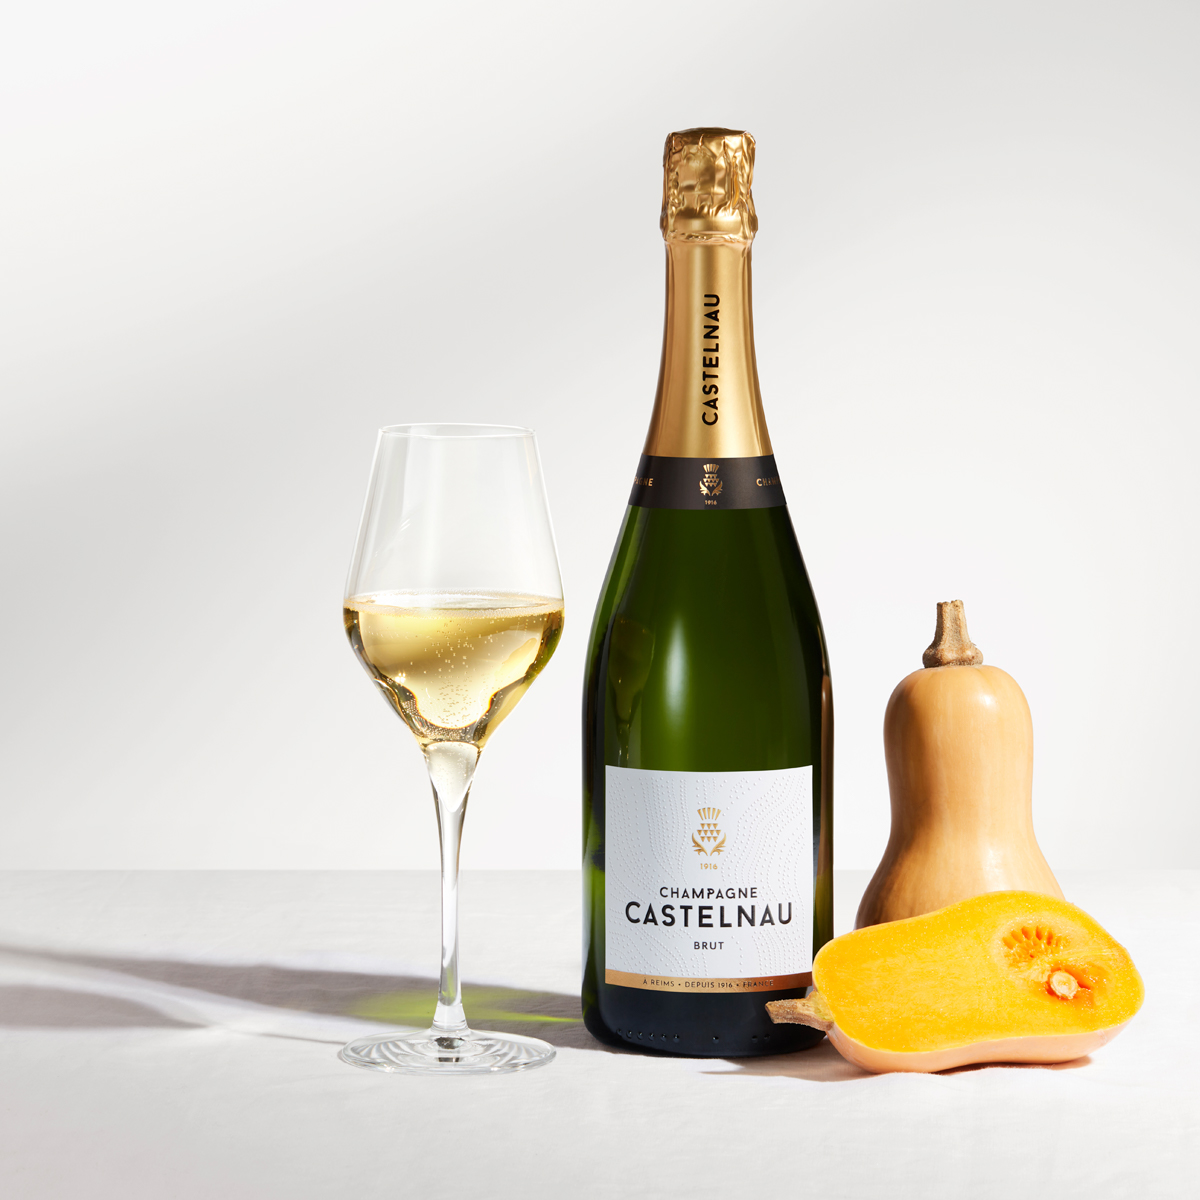 Champagne Castelnau - Tous nos champagnes